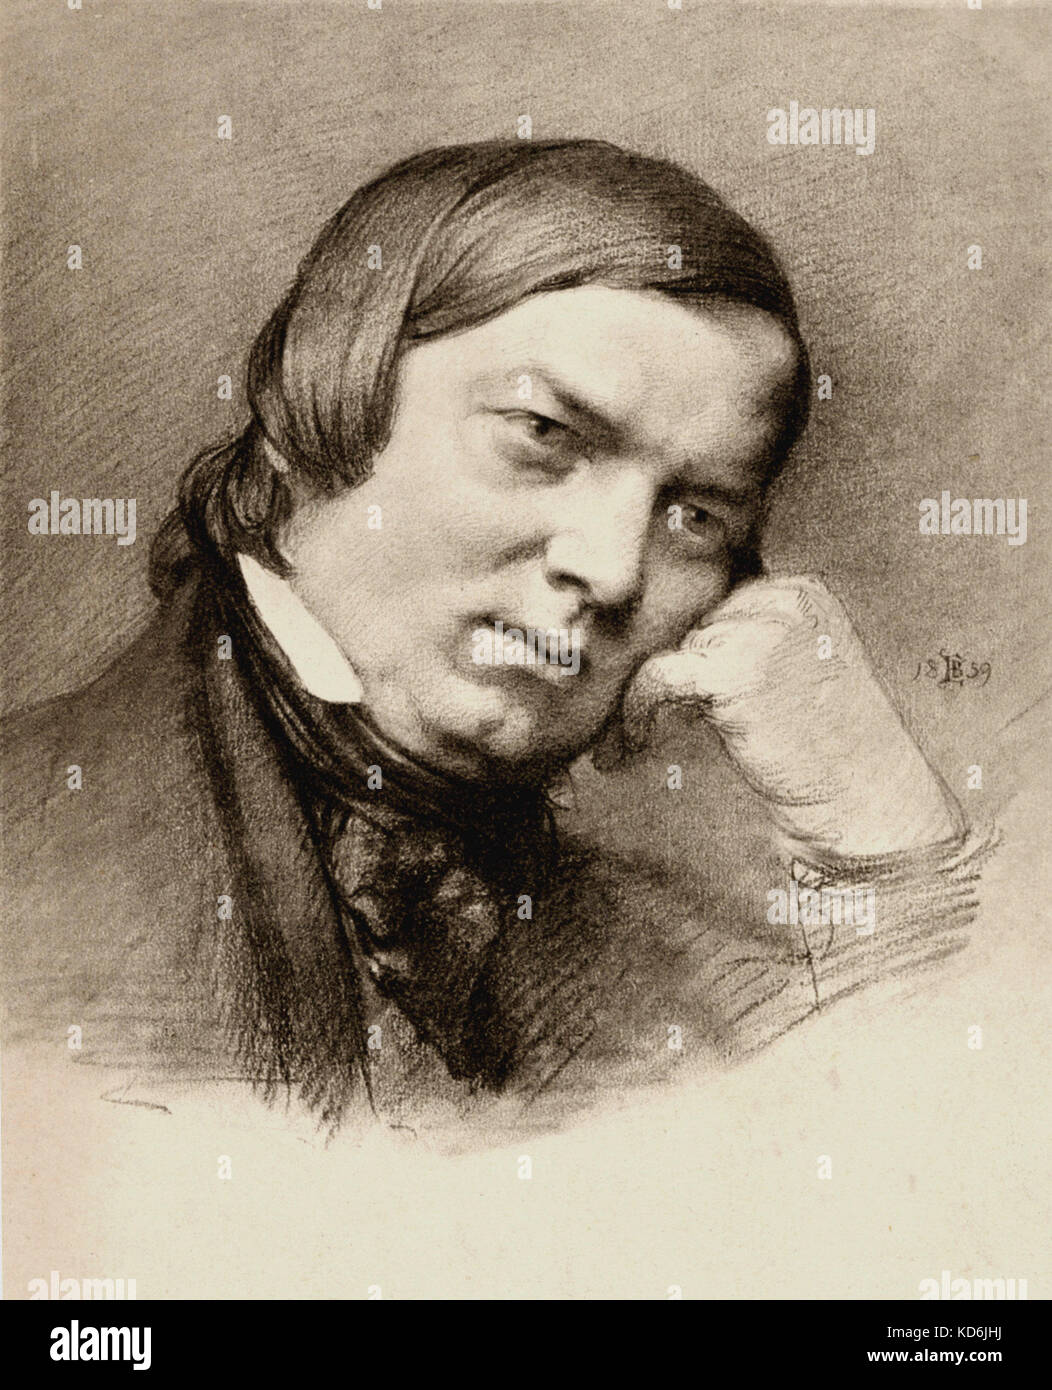 Robert Schumann appuyée sur la main, dessin de E. Bendemann, 1859. Compositeur allemand, 1810-1856. Banque D'Images